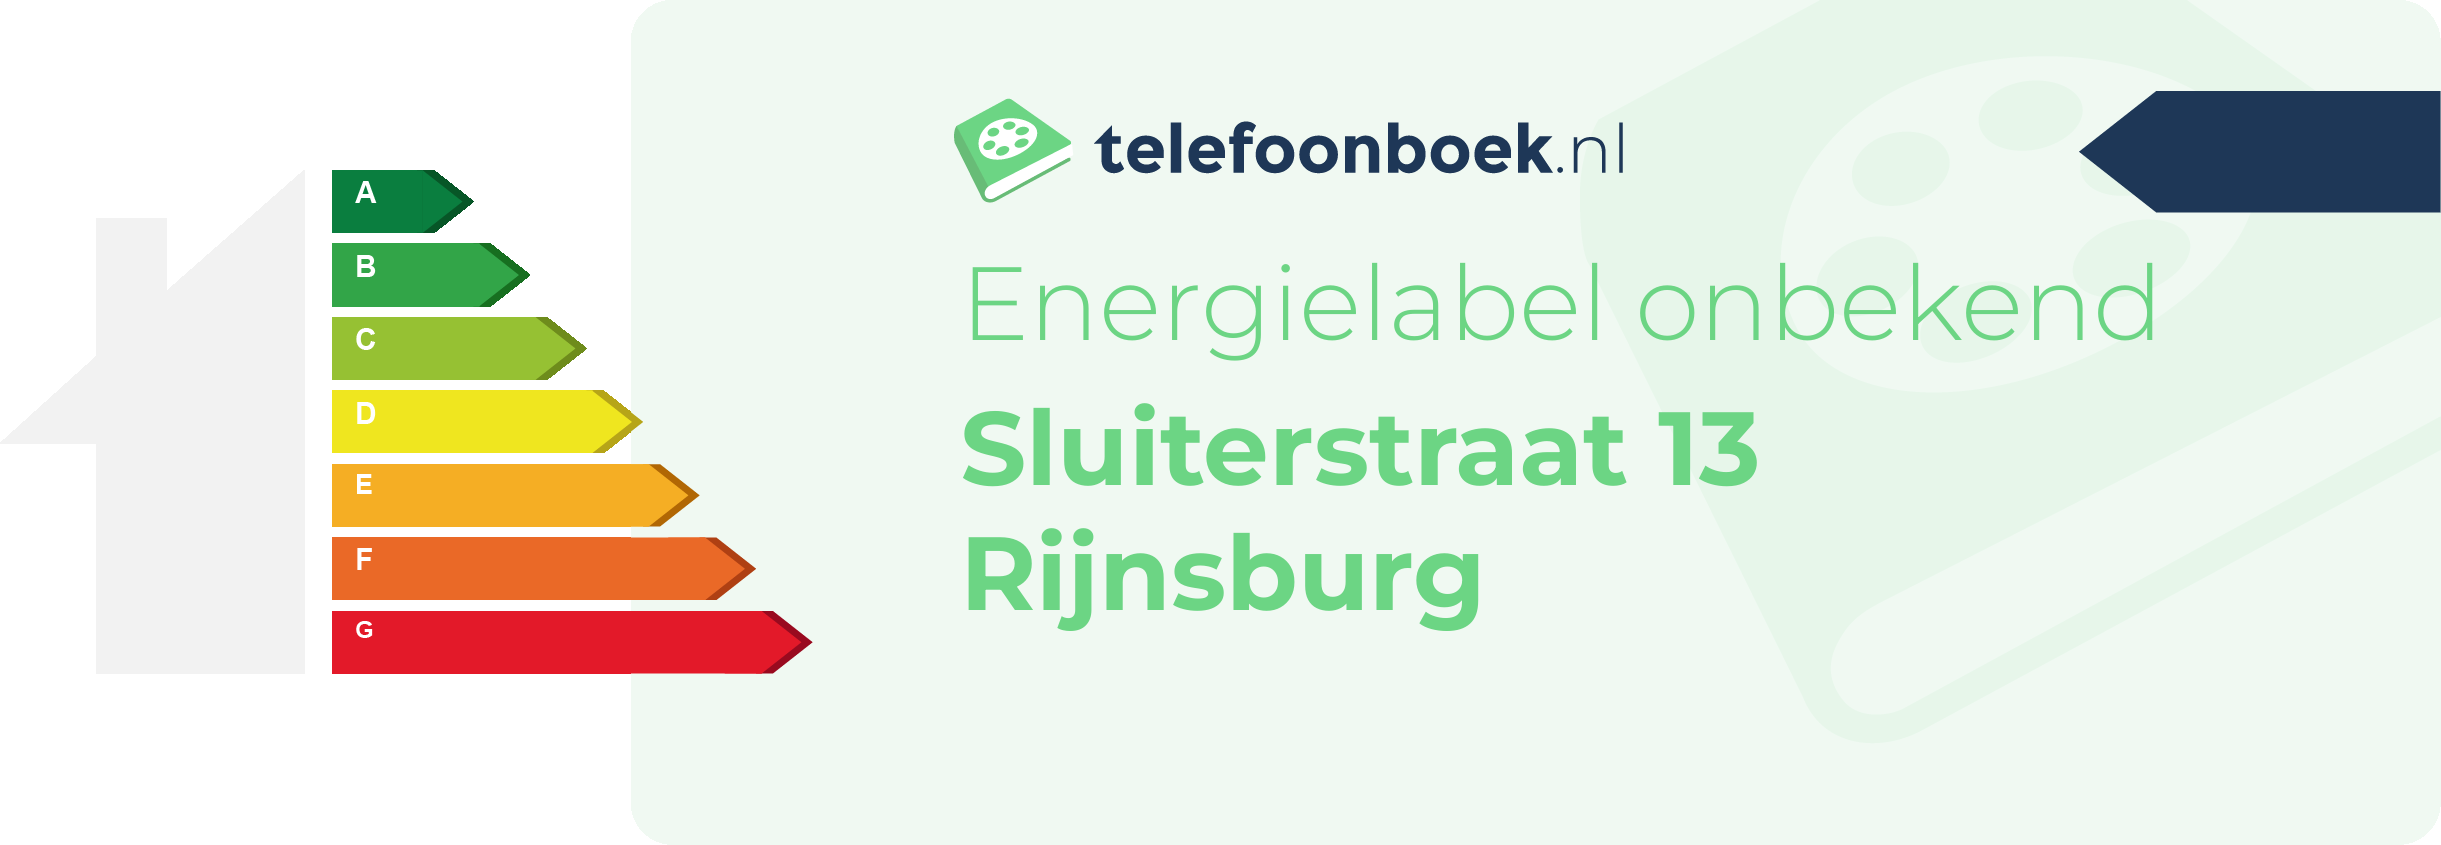 Energielabel Sluiterstraat 13 Rijnsburg